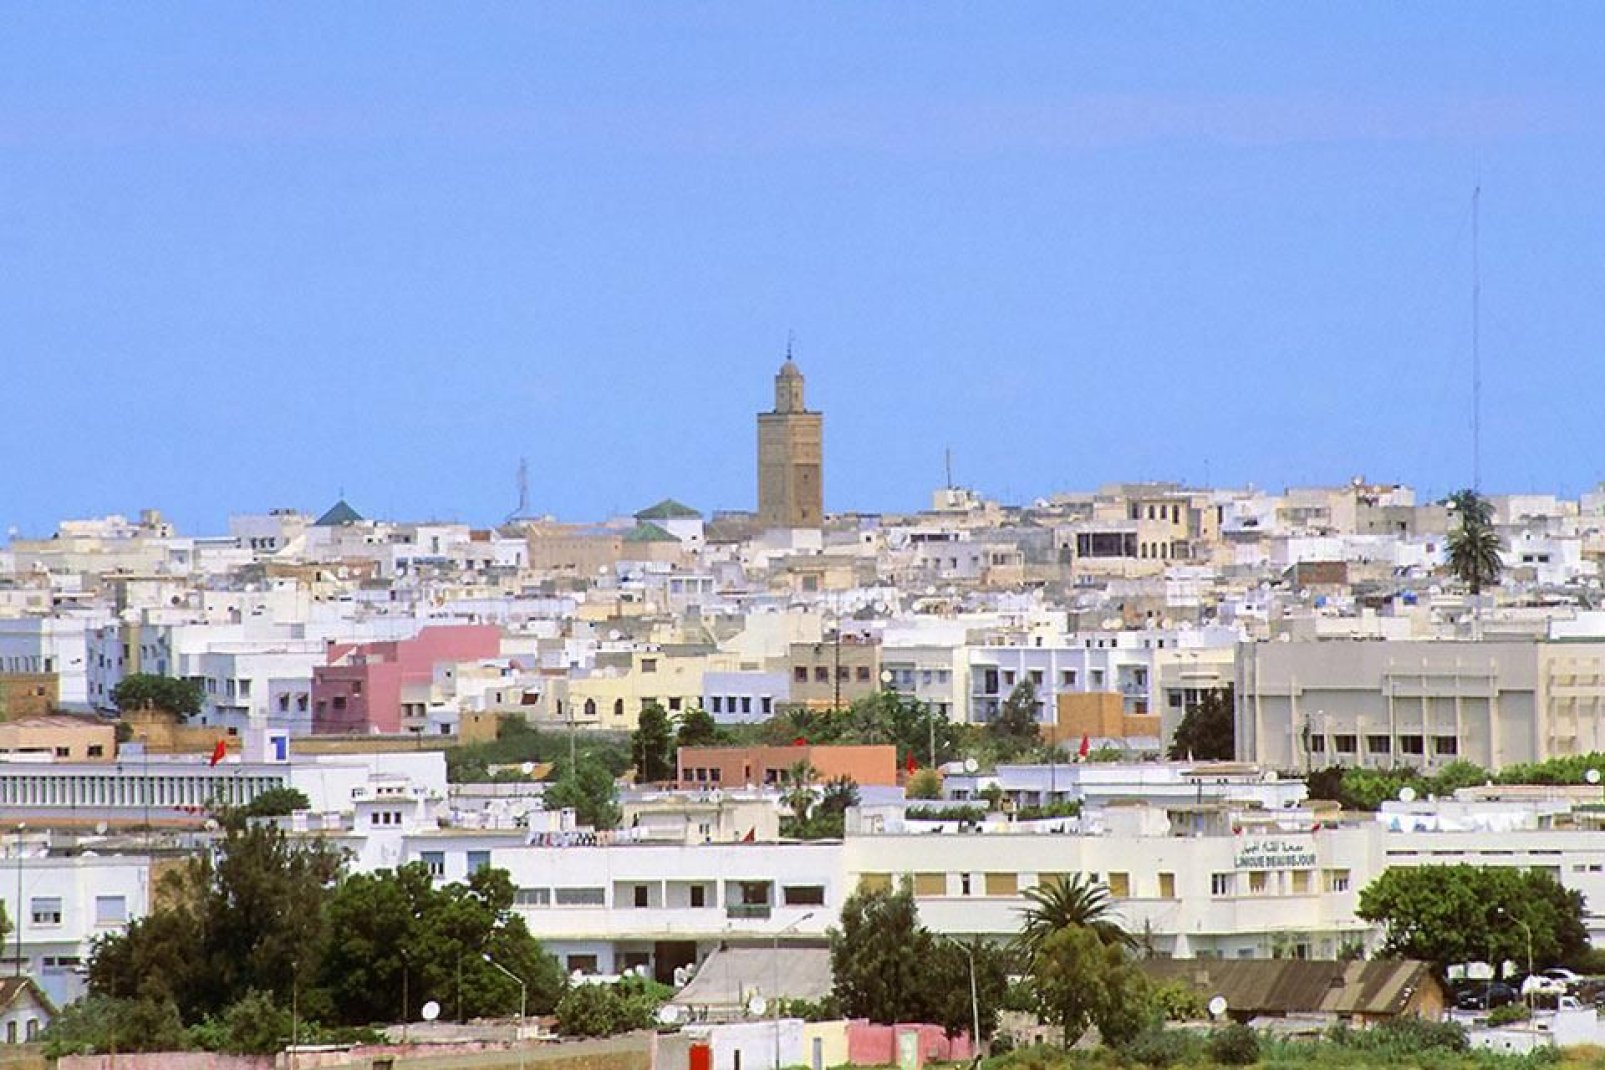 Ville historique, Rabat recéle de nombreux trésors au sein de ses remparts. Mosquée, quartier juif, kasbah des Oudaias... la ville mérite le détour